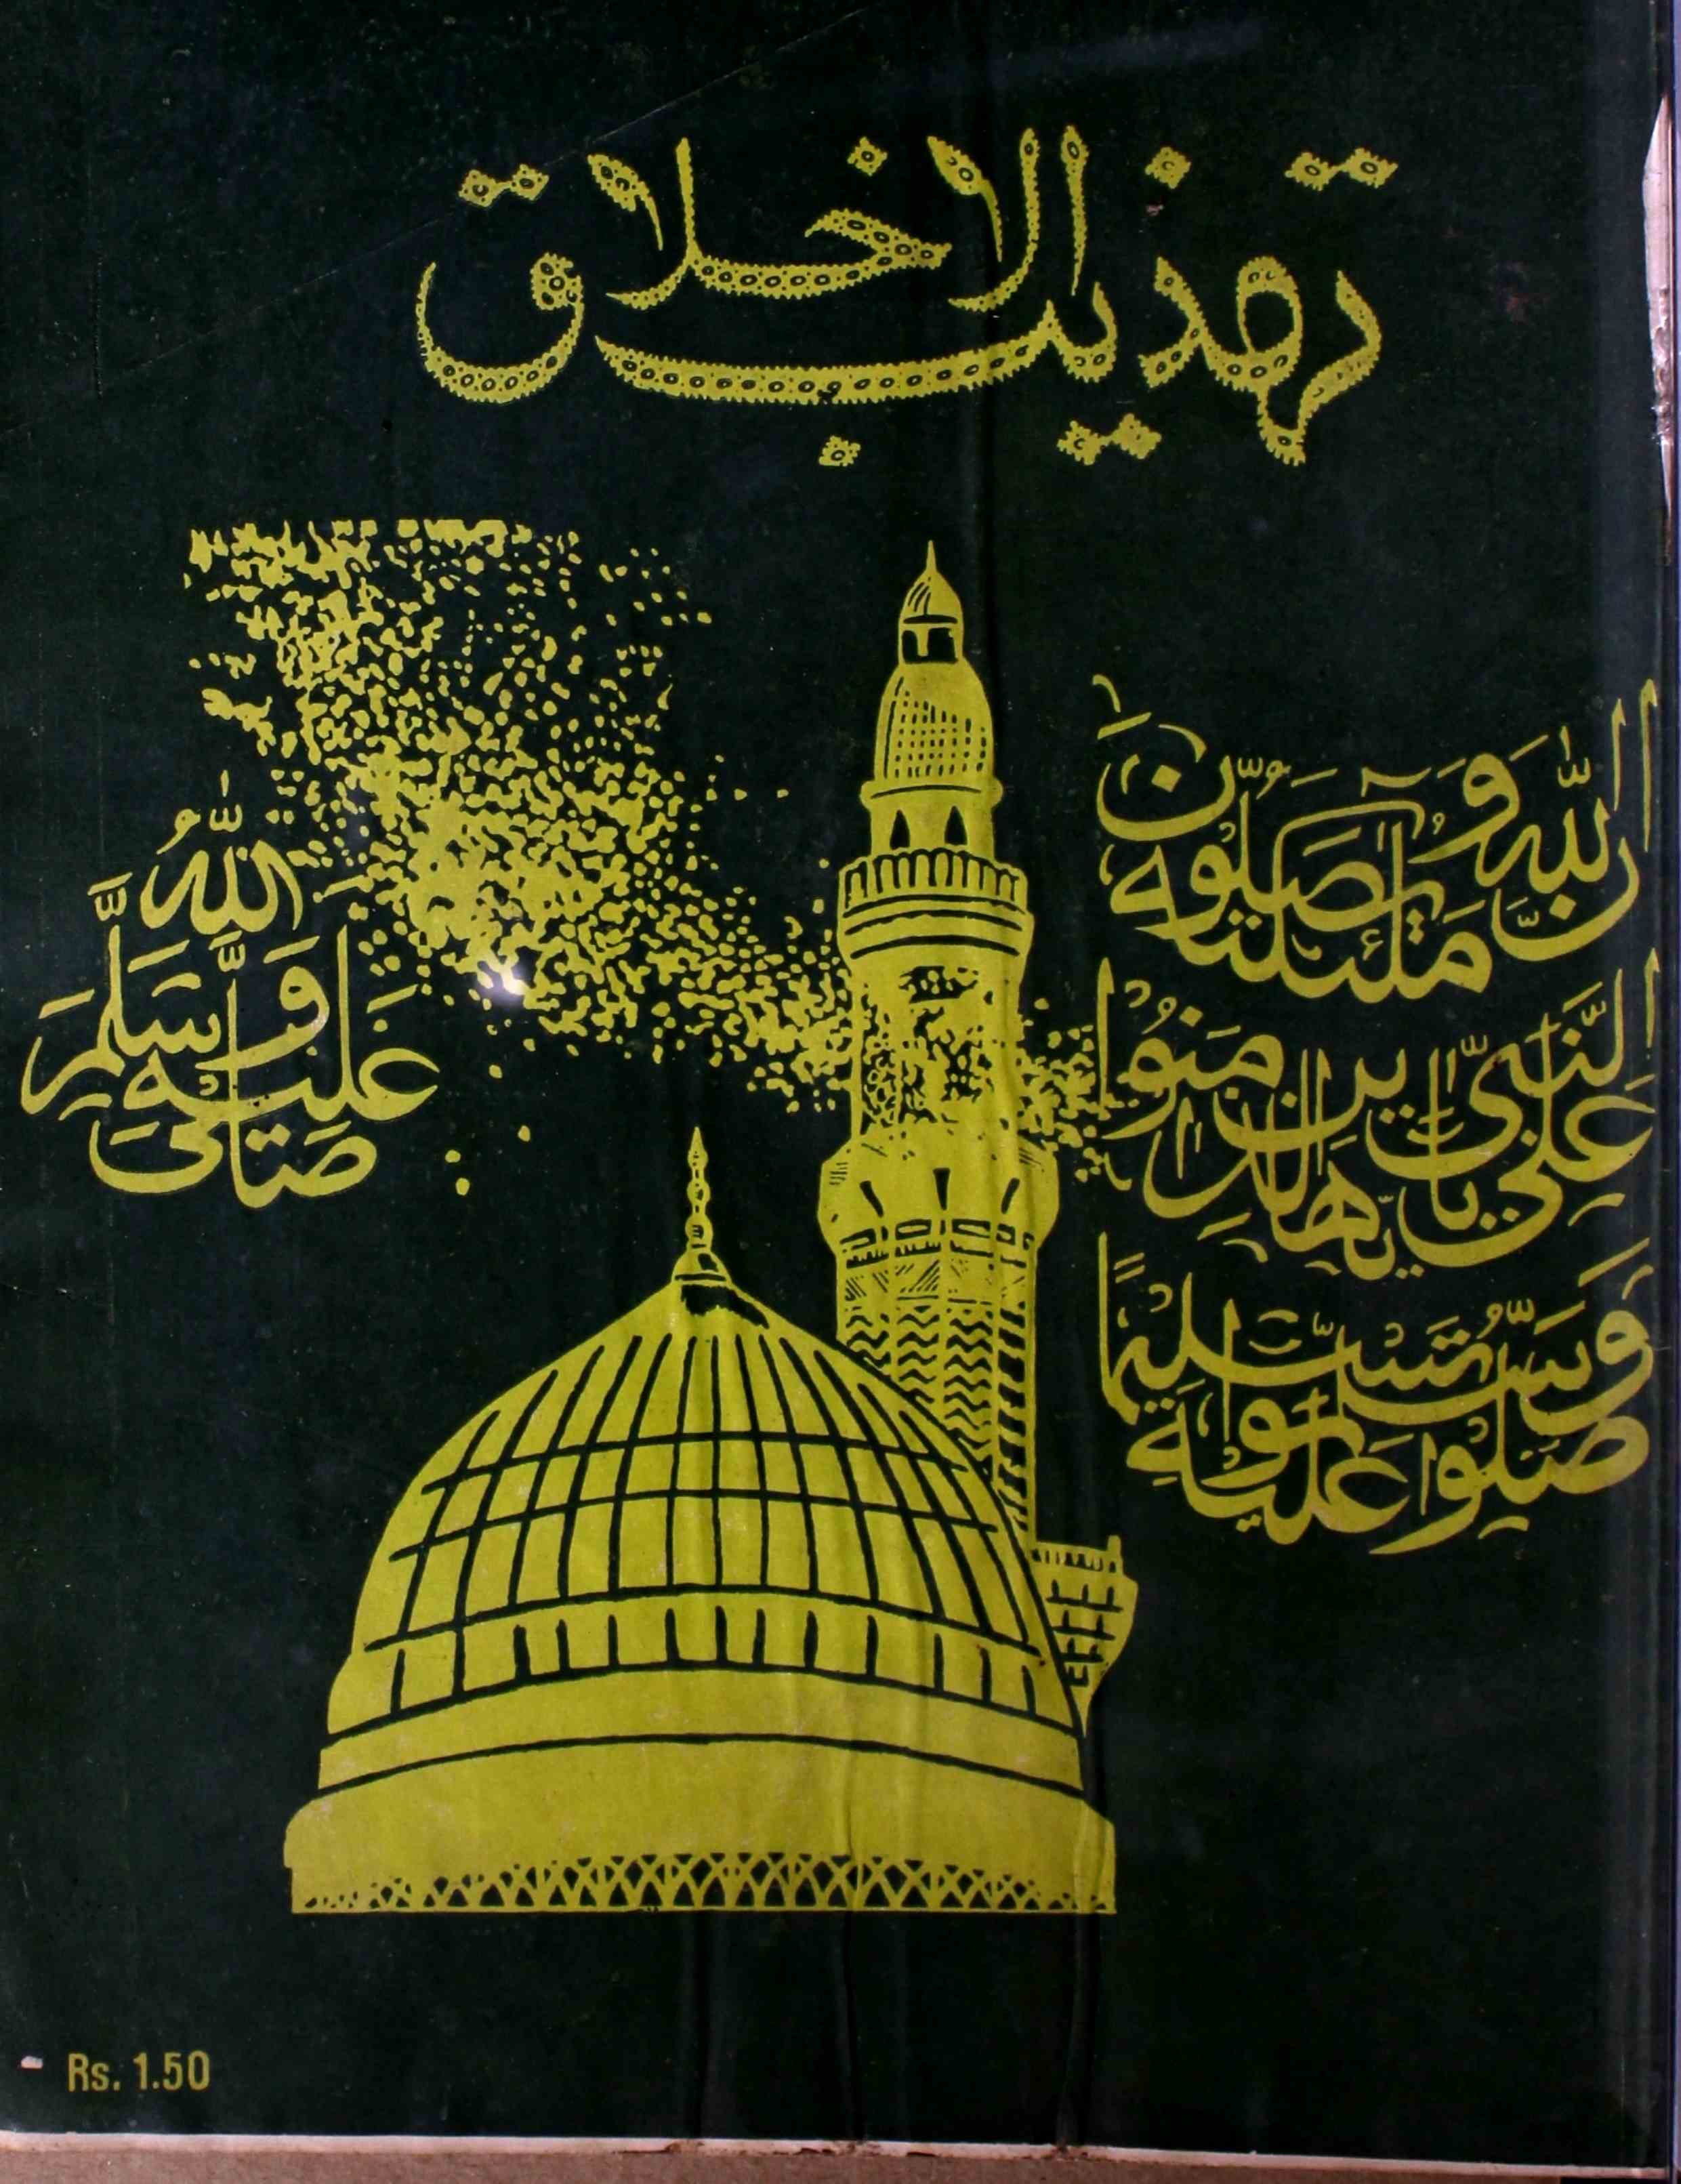 tahzibul-akhlaq-aligarh-shumaara-number-023-syed-hamid-magazines-1